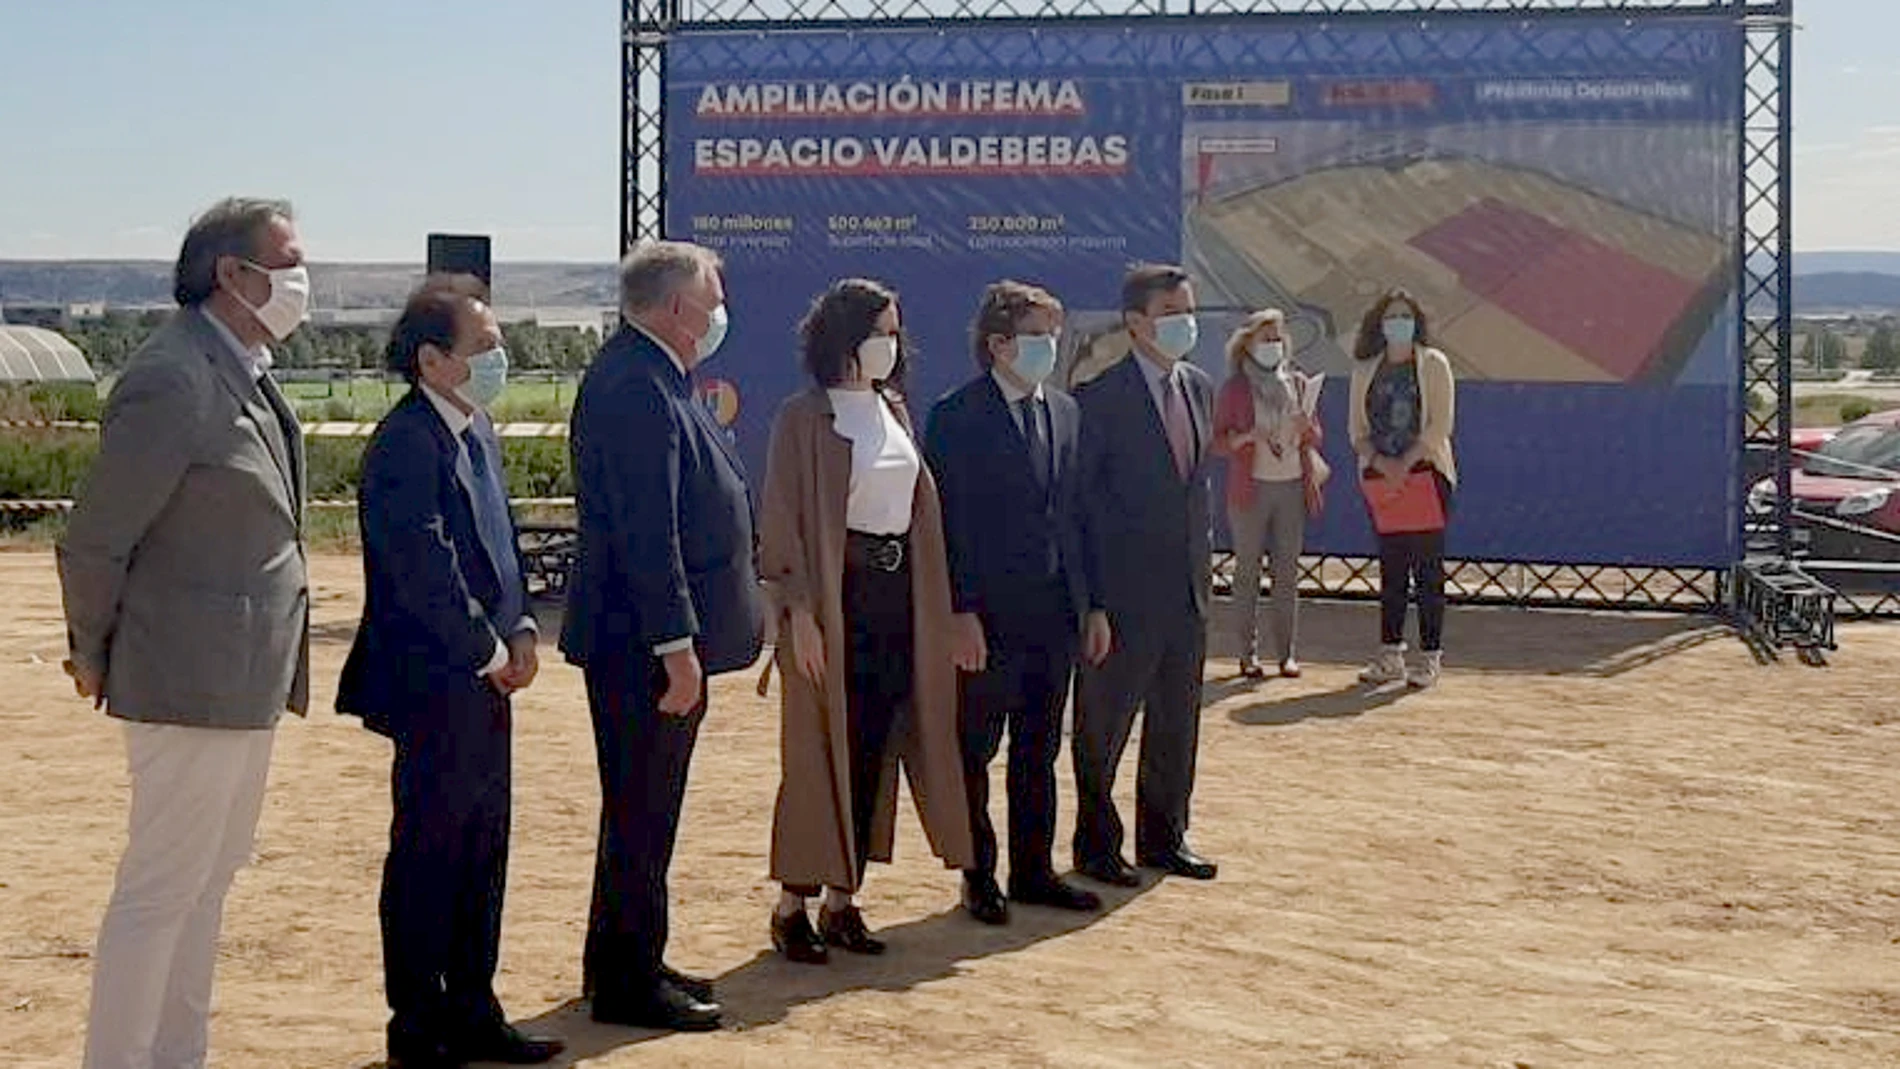 Díaz Ayuso y Martínez Almeida, esta mañana, durante la presentación de la ampliación de Ifema